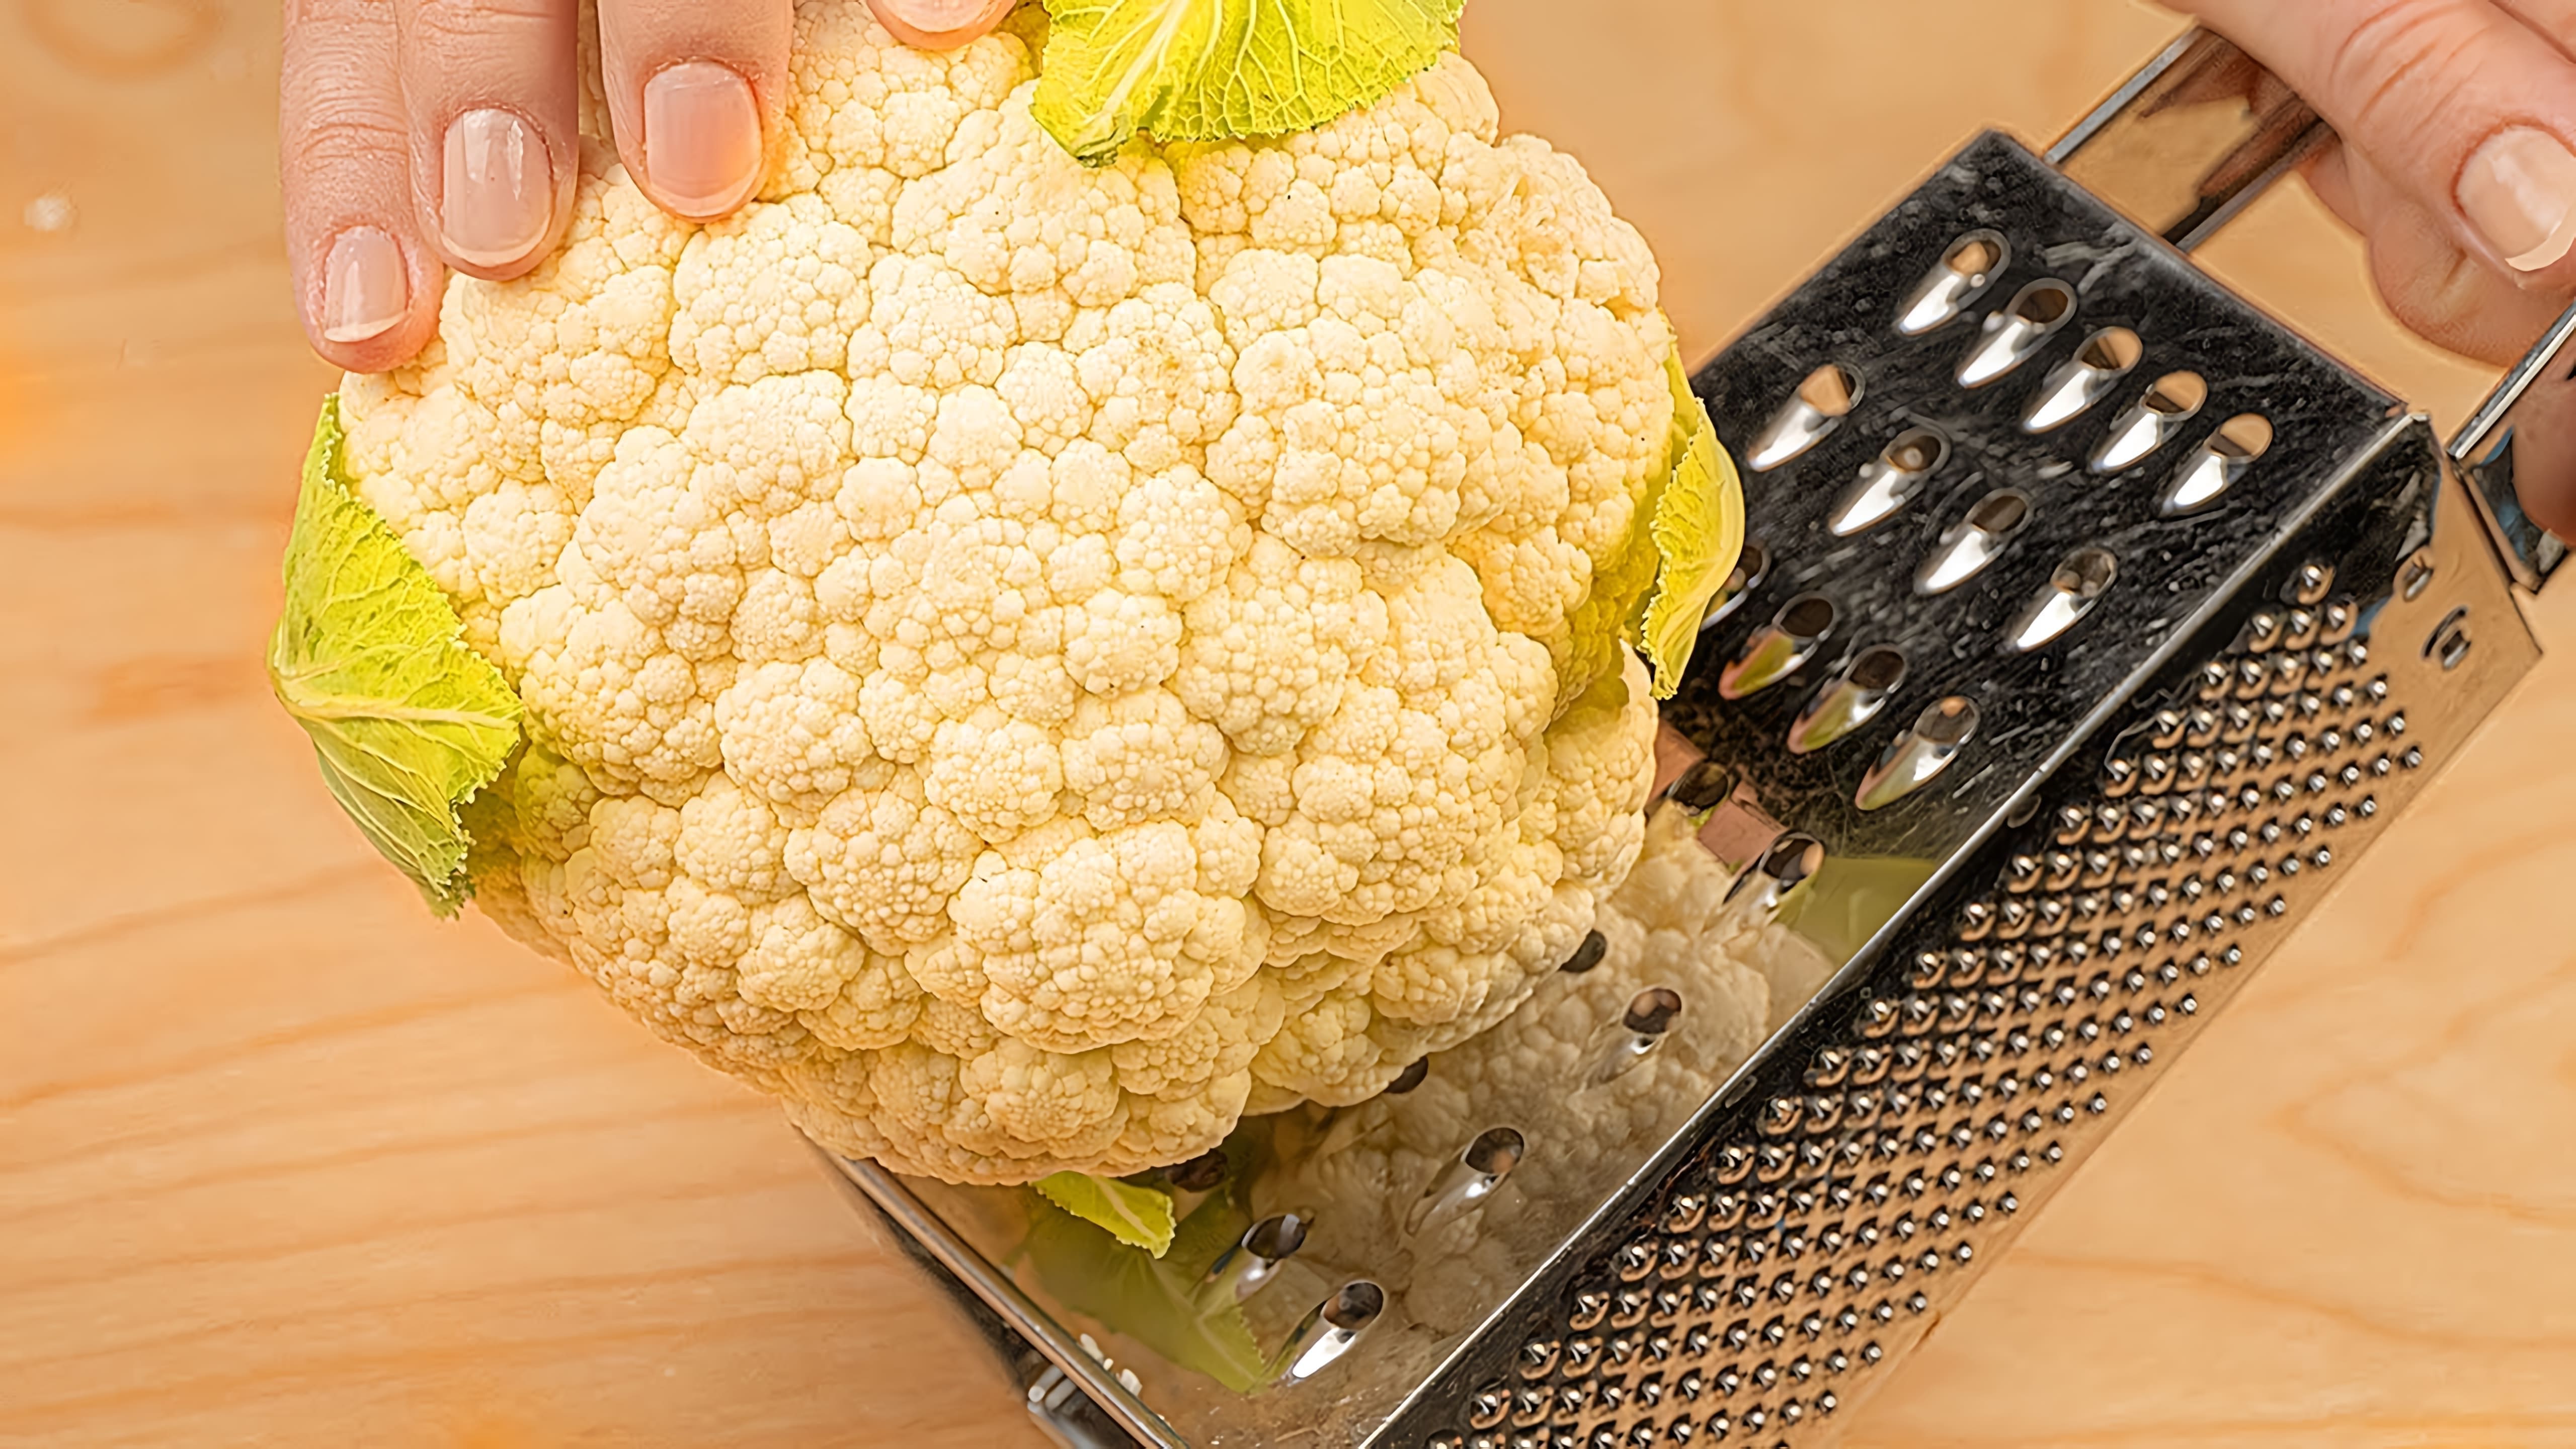 В этом видео демонстрируются пять рецептов приготовления цветной капусты